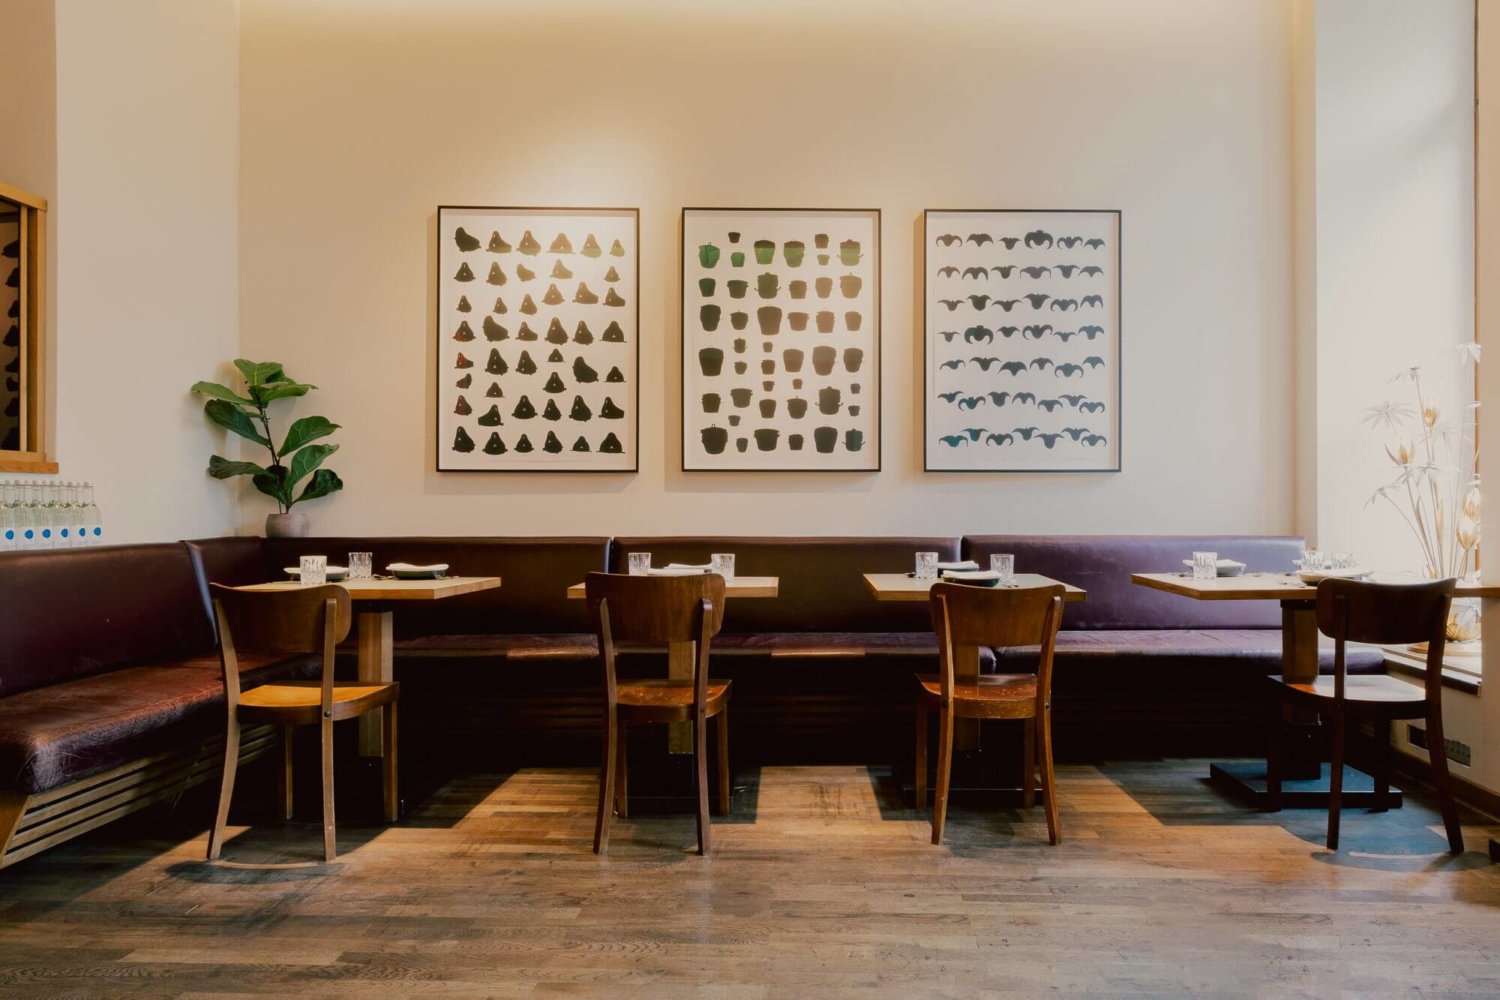 Blick in das Restaurant Kin Dee, zu sehen sind vier kleine Tische und eine lange Sitzbank sowieso einzelne Holzstühle, im Hintergrund hängen Kunstwerke an der Wand